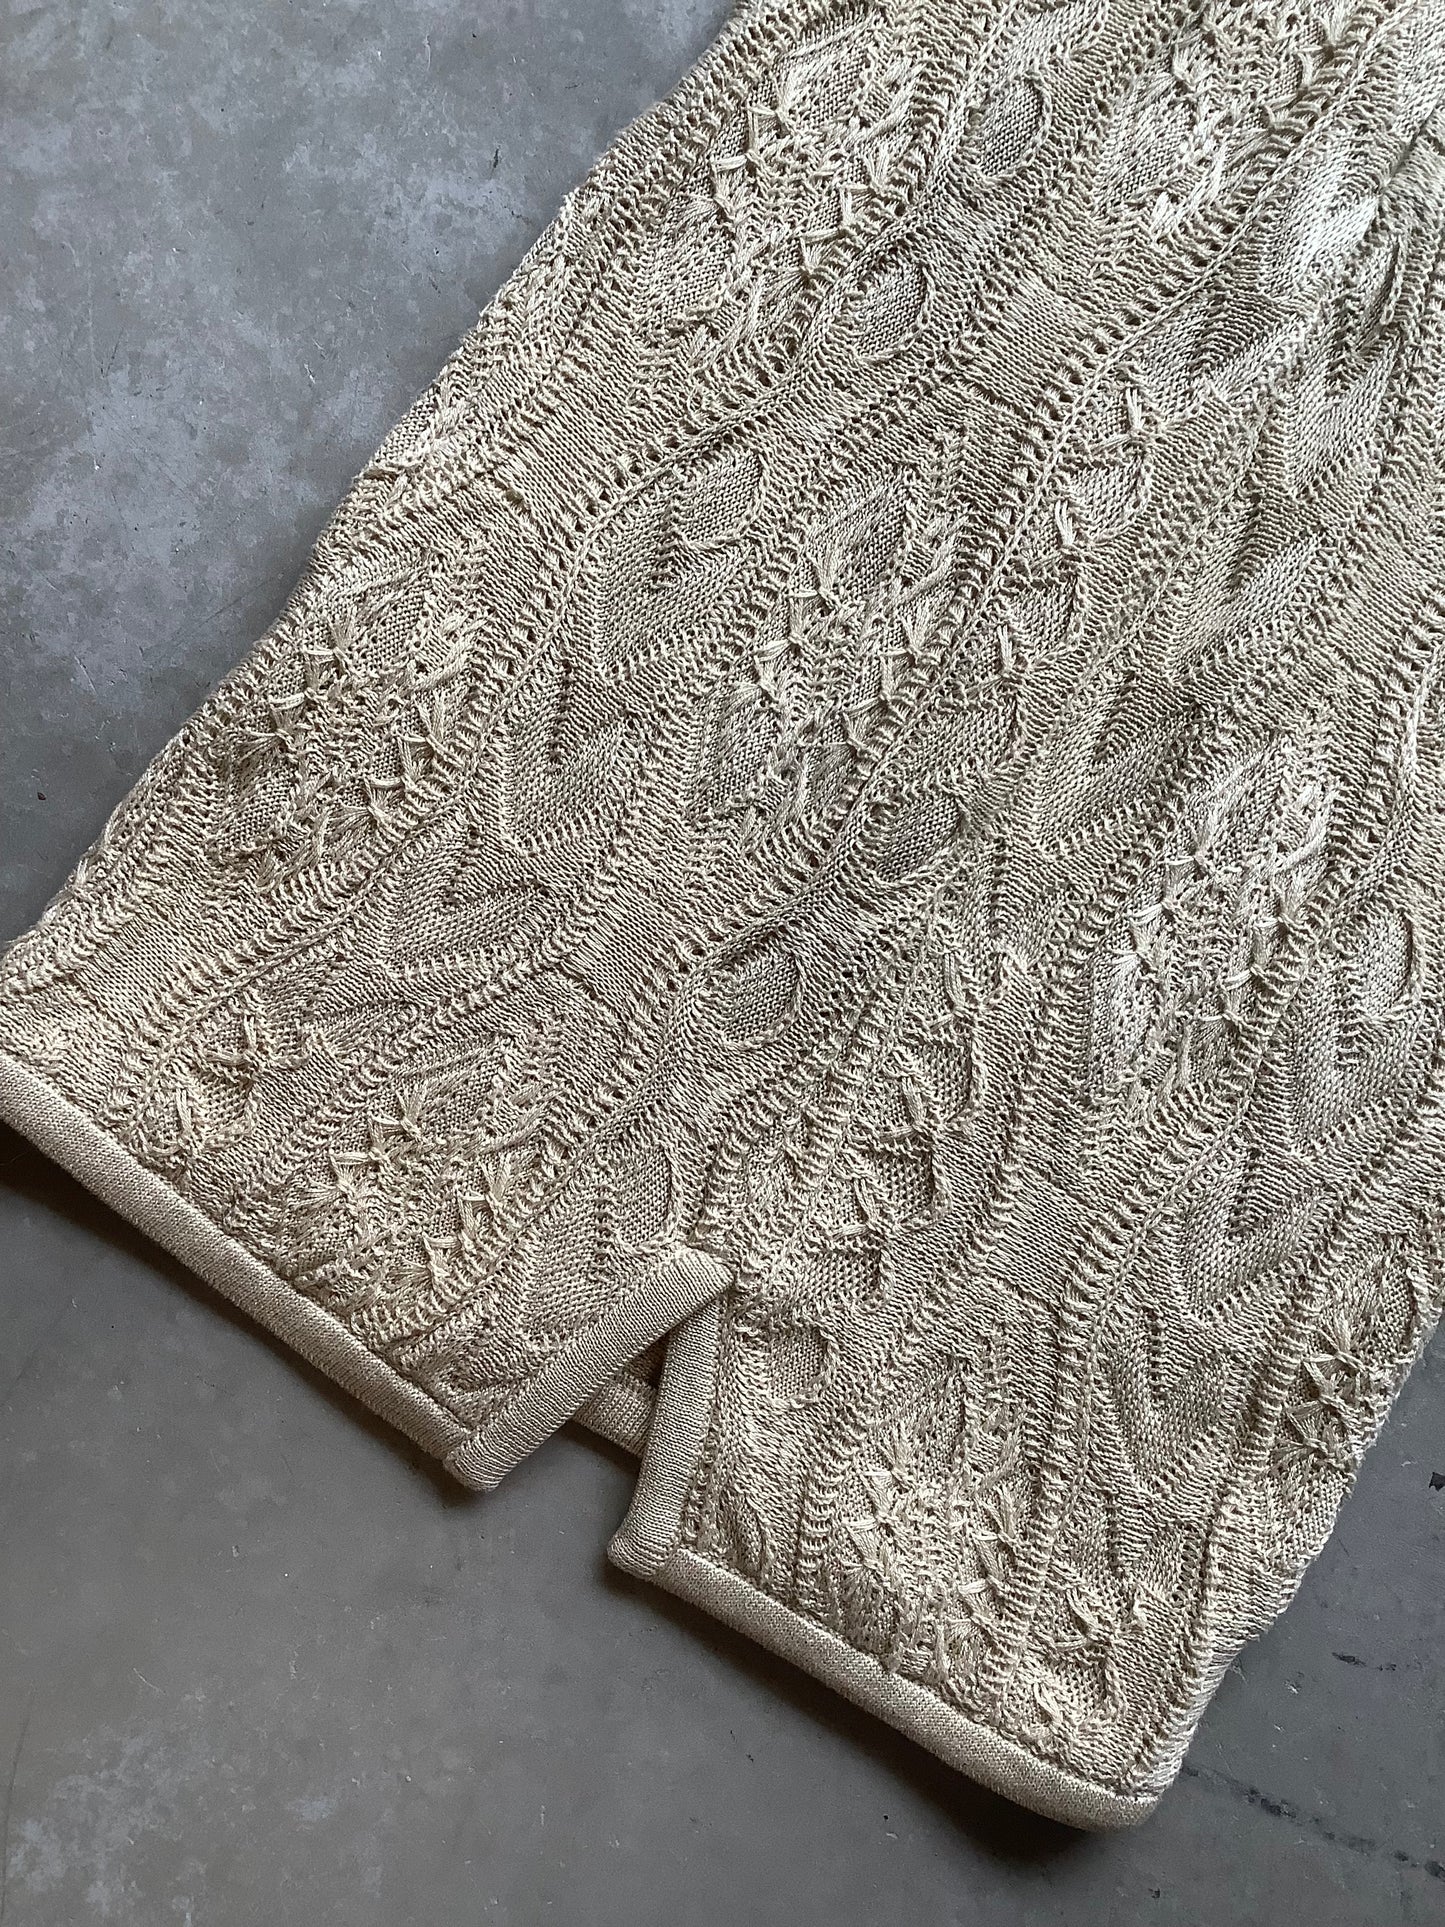 Neutral Coogi cotton sweater dress